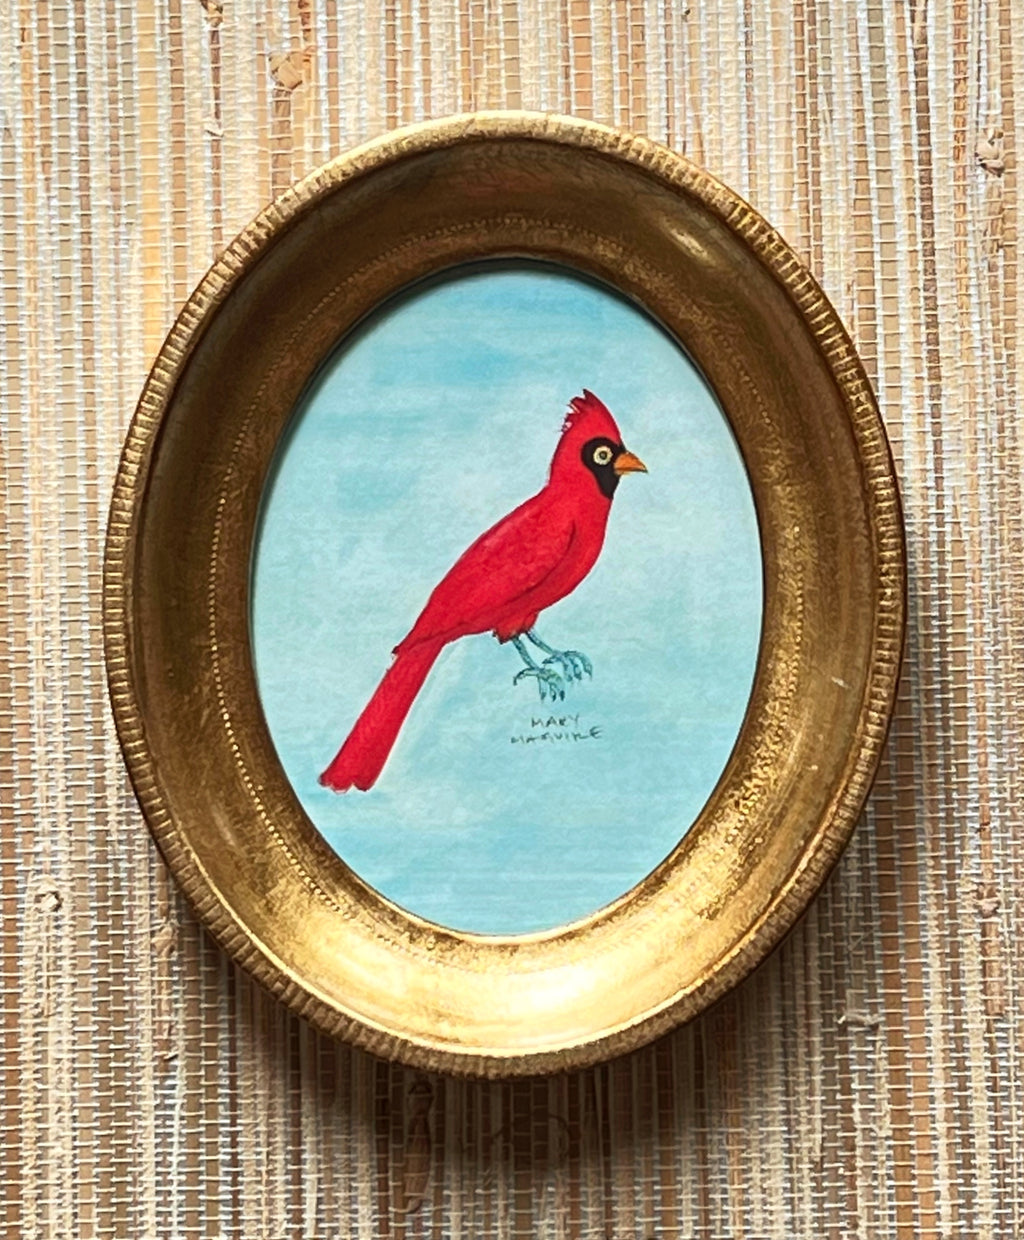 ‘Cardinal' -5 1/2 x 6 3/4 inch gilt oval